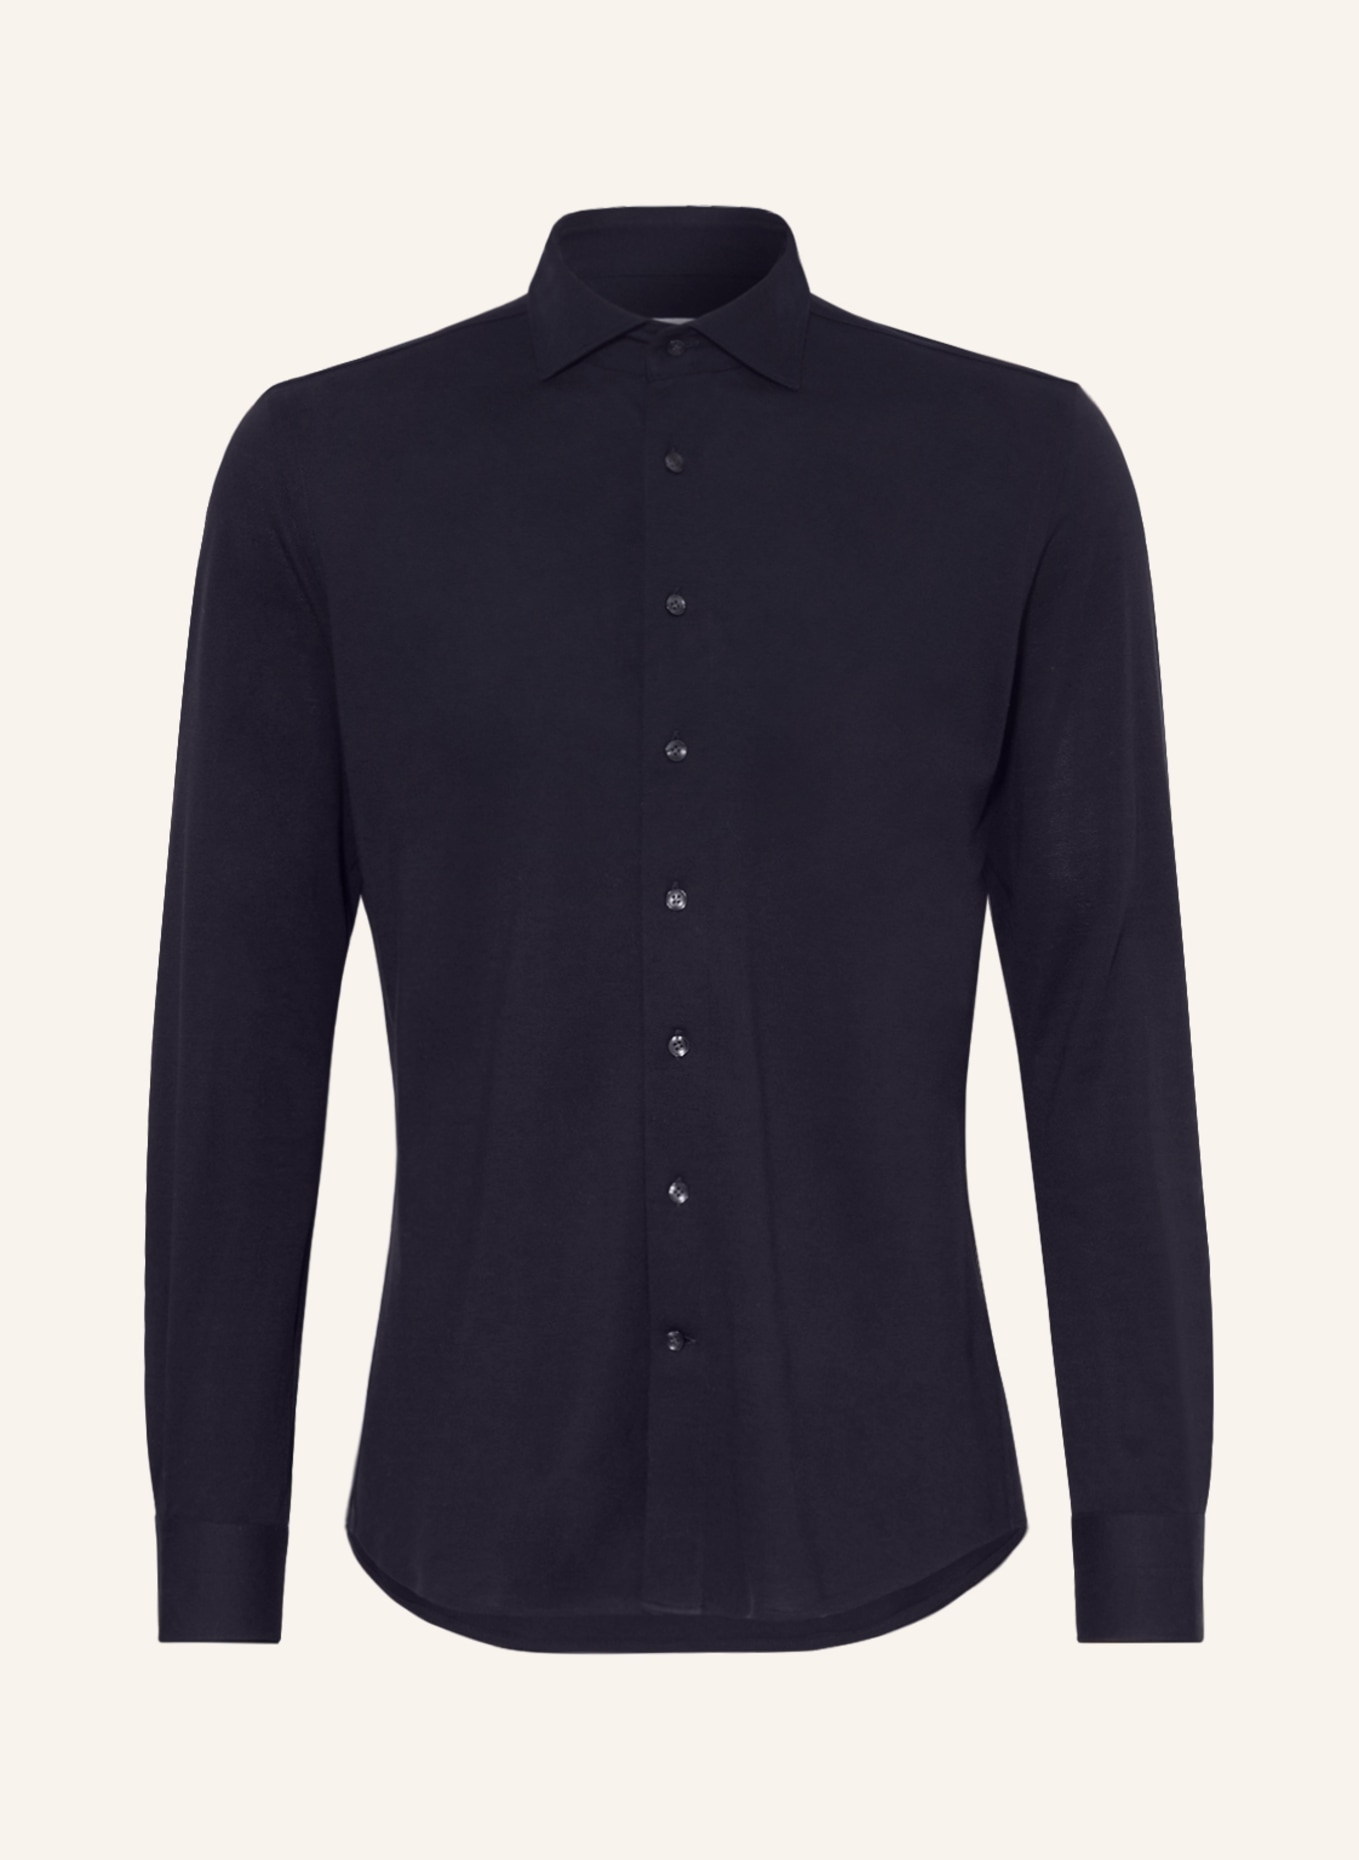 PROFUOMO Piqué-Hemd Slim Fit, Farbe: DUNKELBLAU (Bild 1)